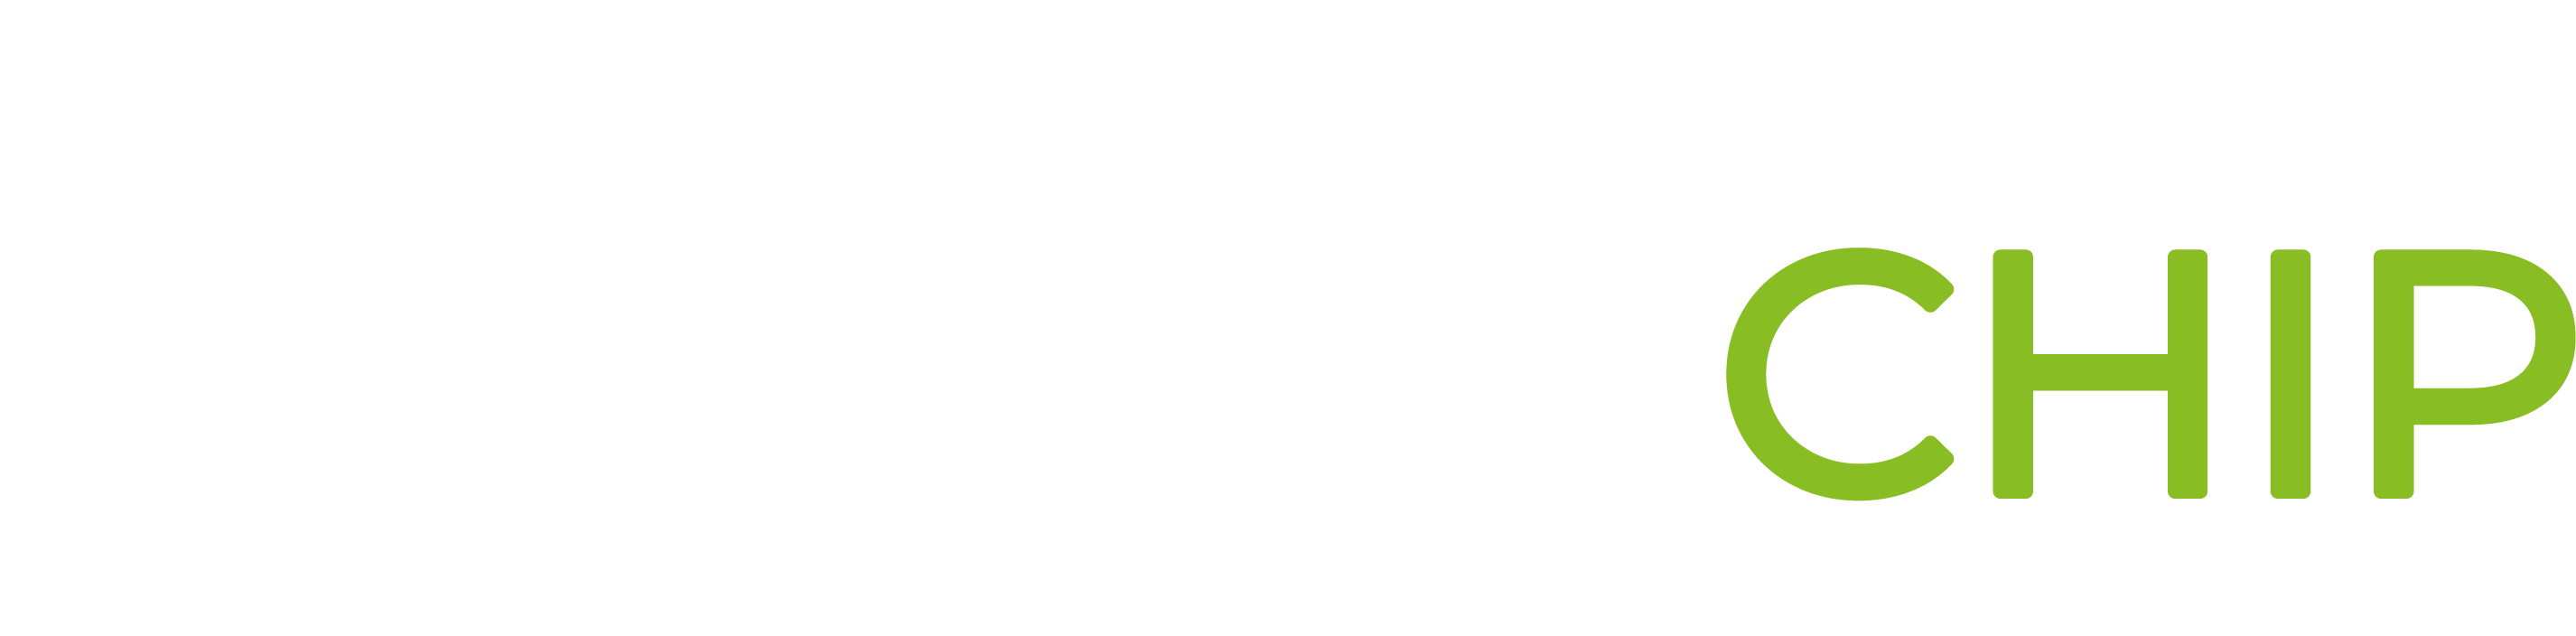 01_3-ironchip_logo_articulación horizontal_negativo-2